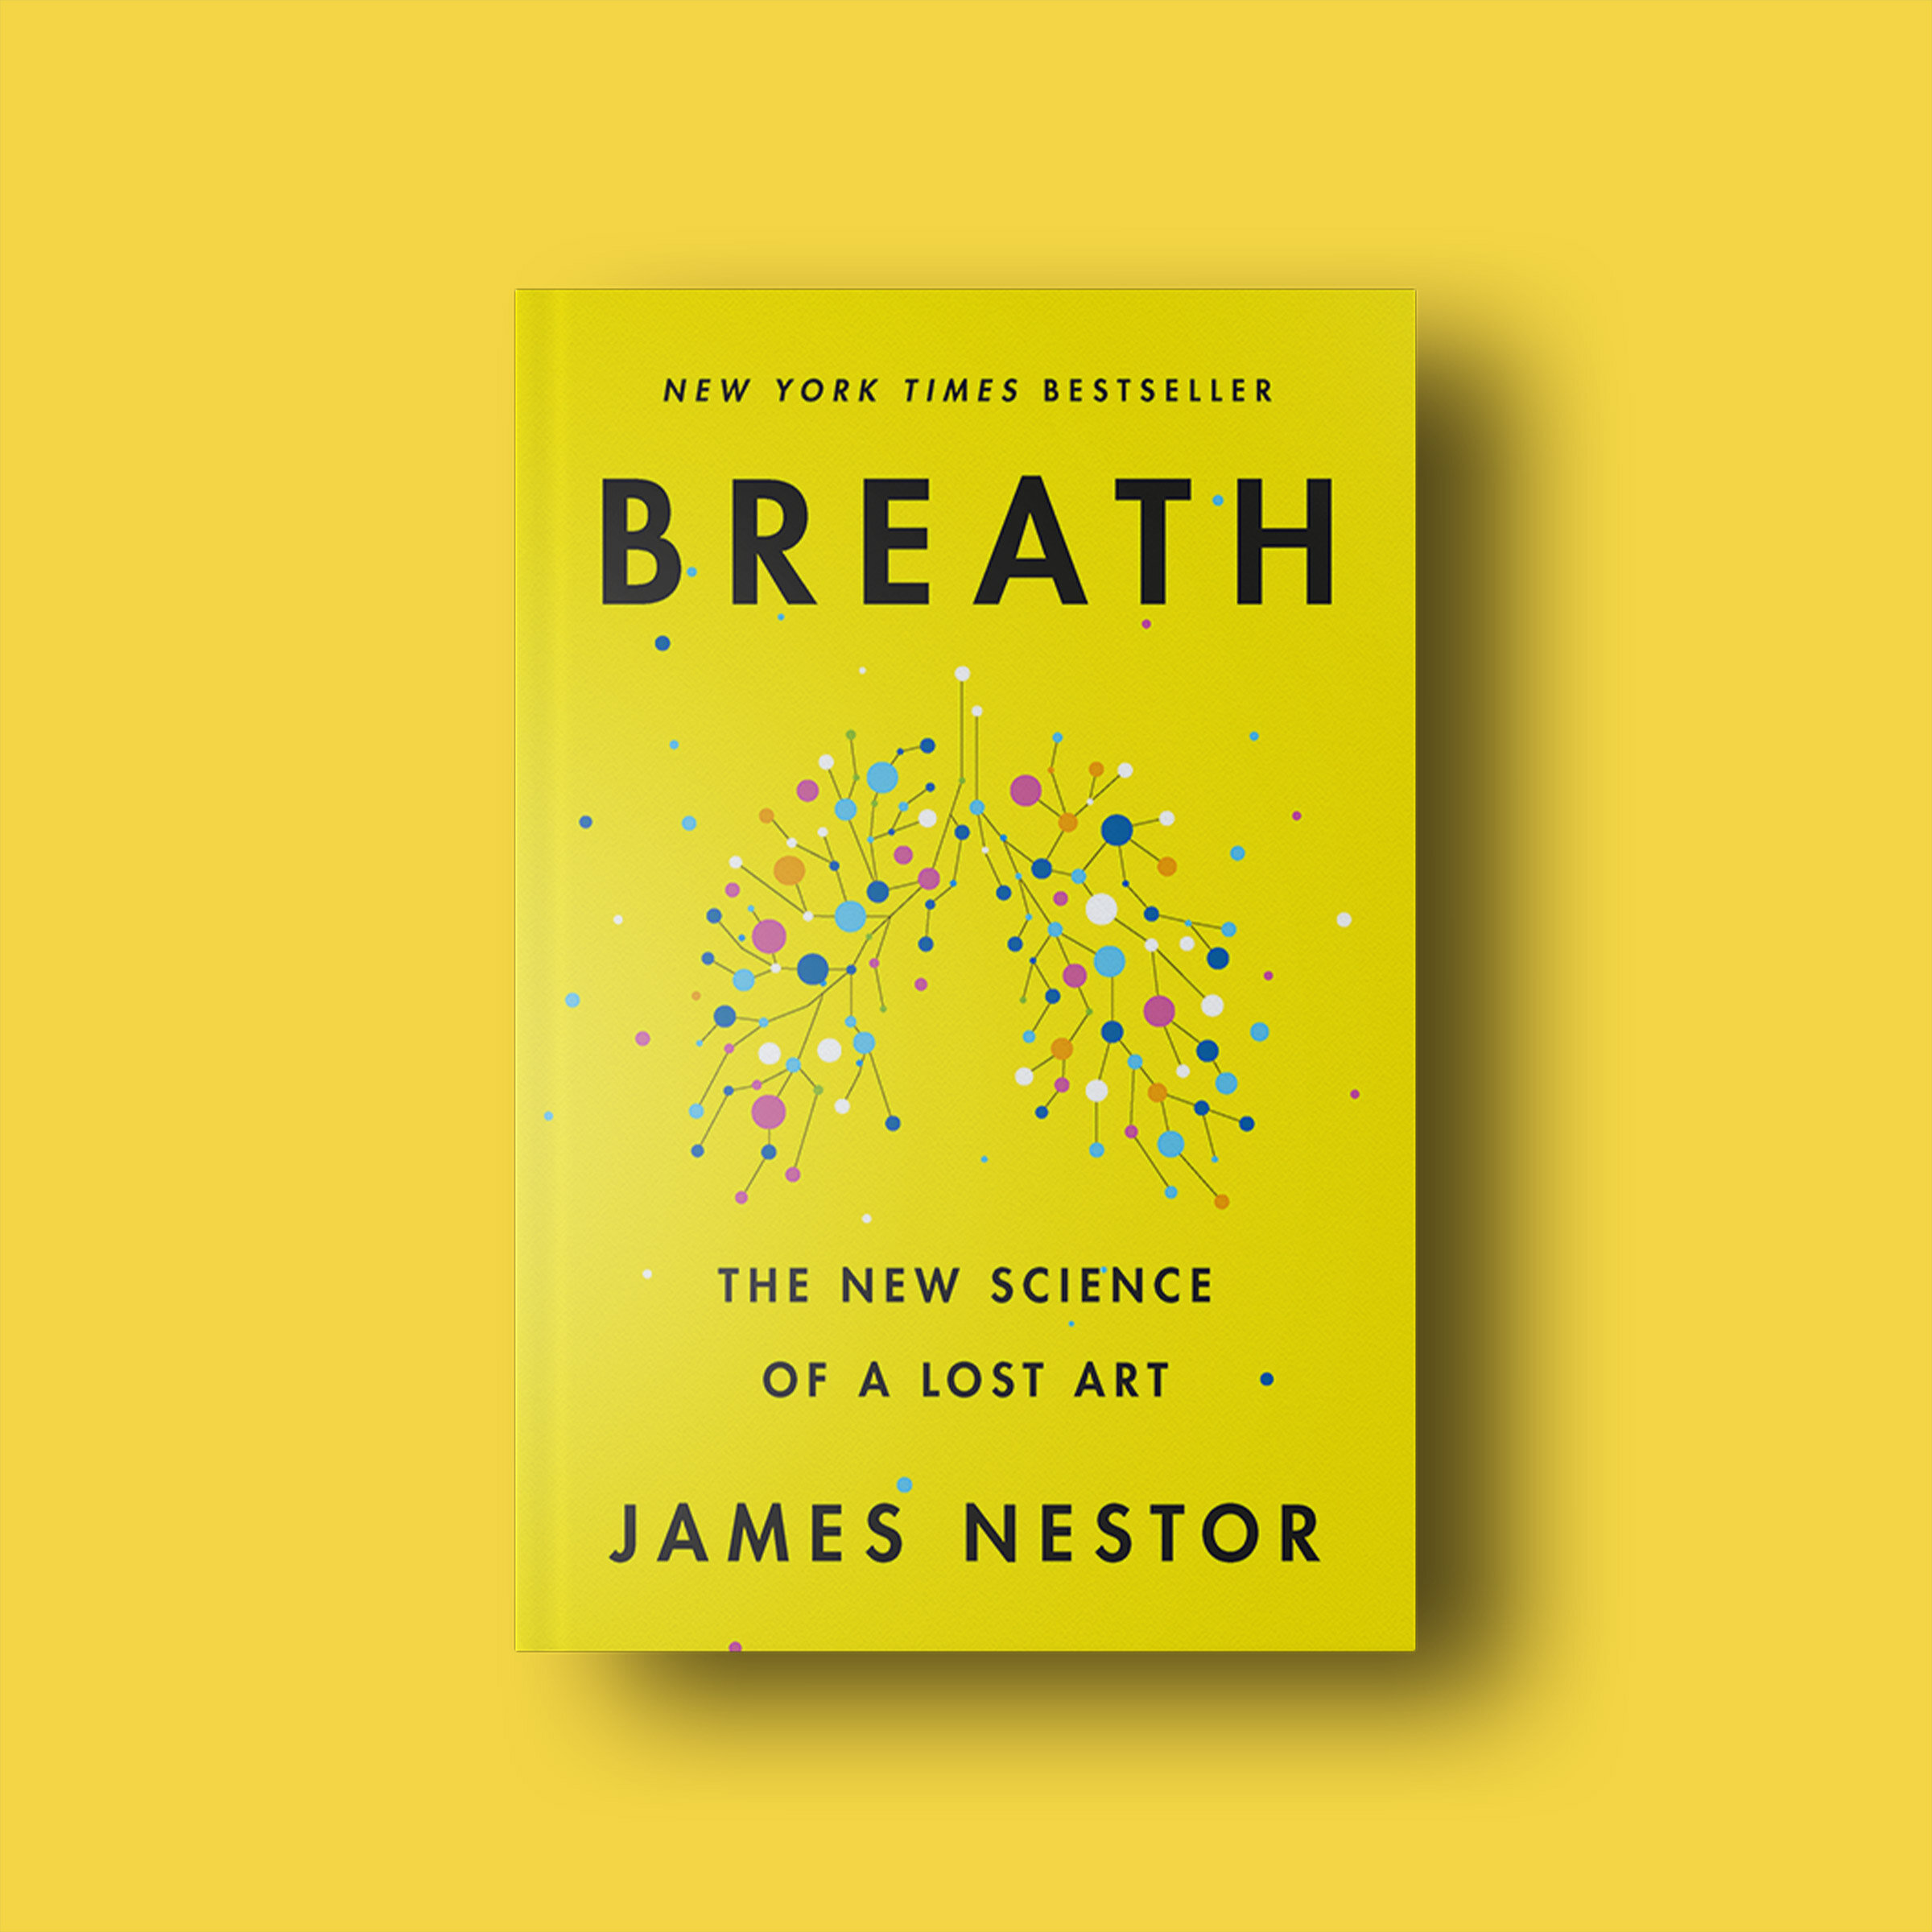 Wim Hof Method Of Breathing: Can It Be Dangerous? Buteyko